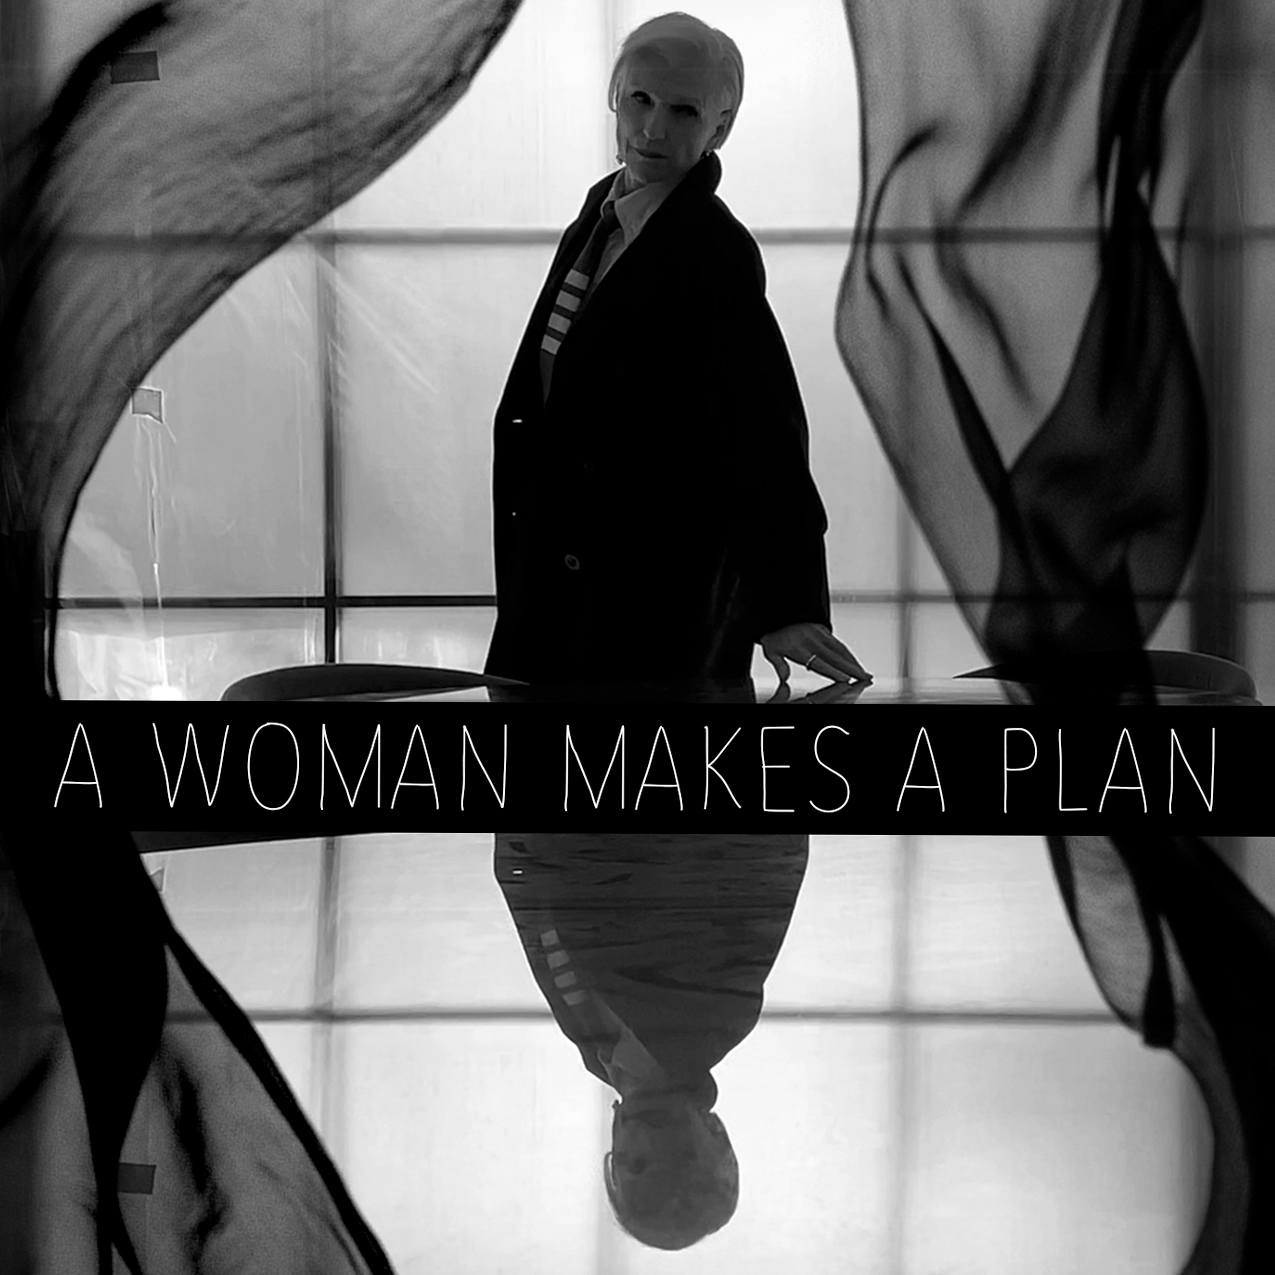 A WOMAN MAKES A PLAN